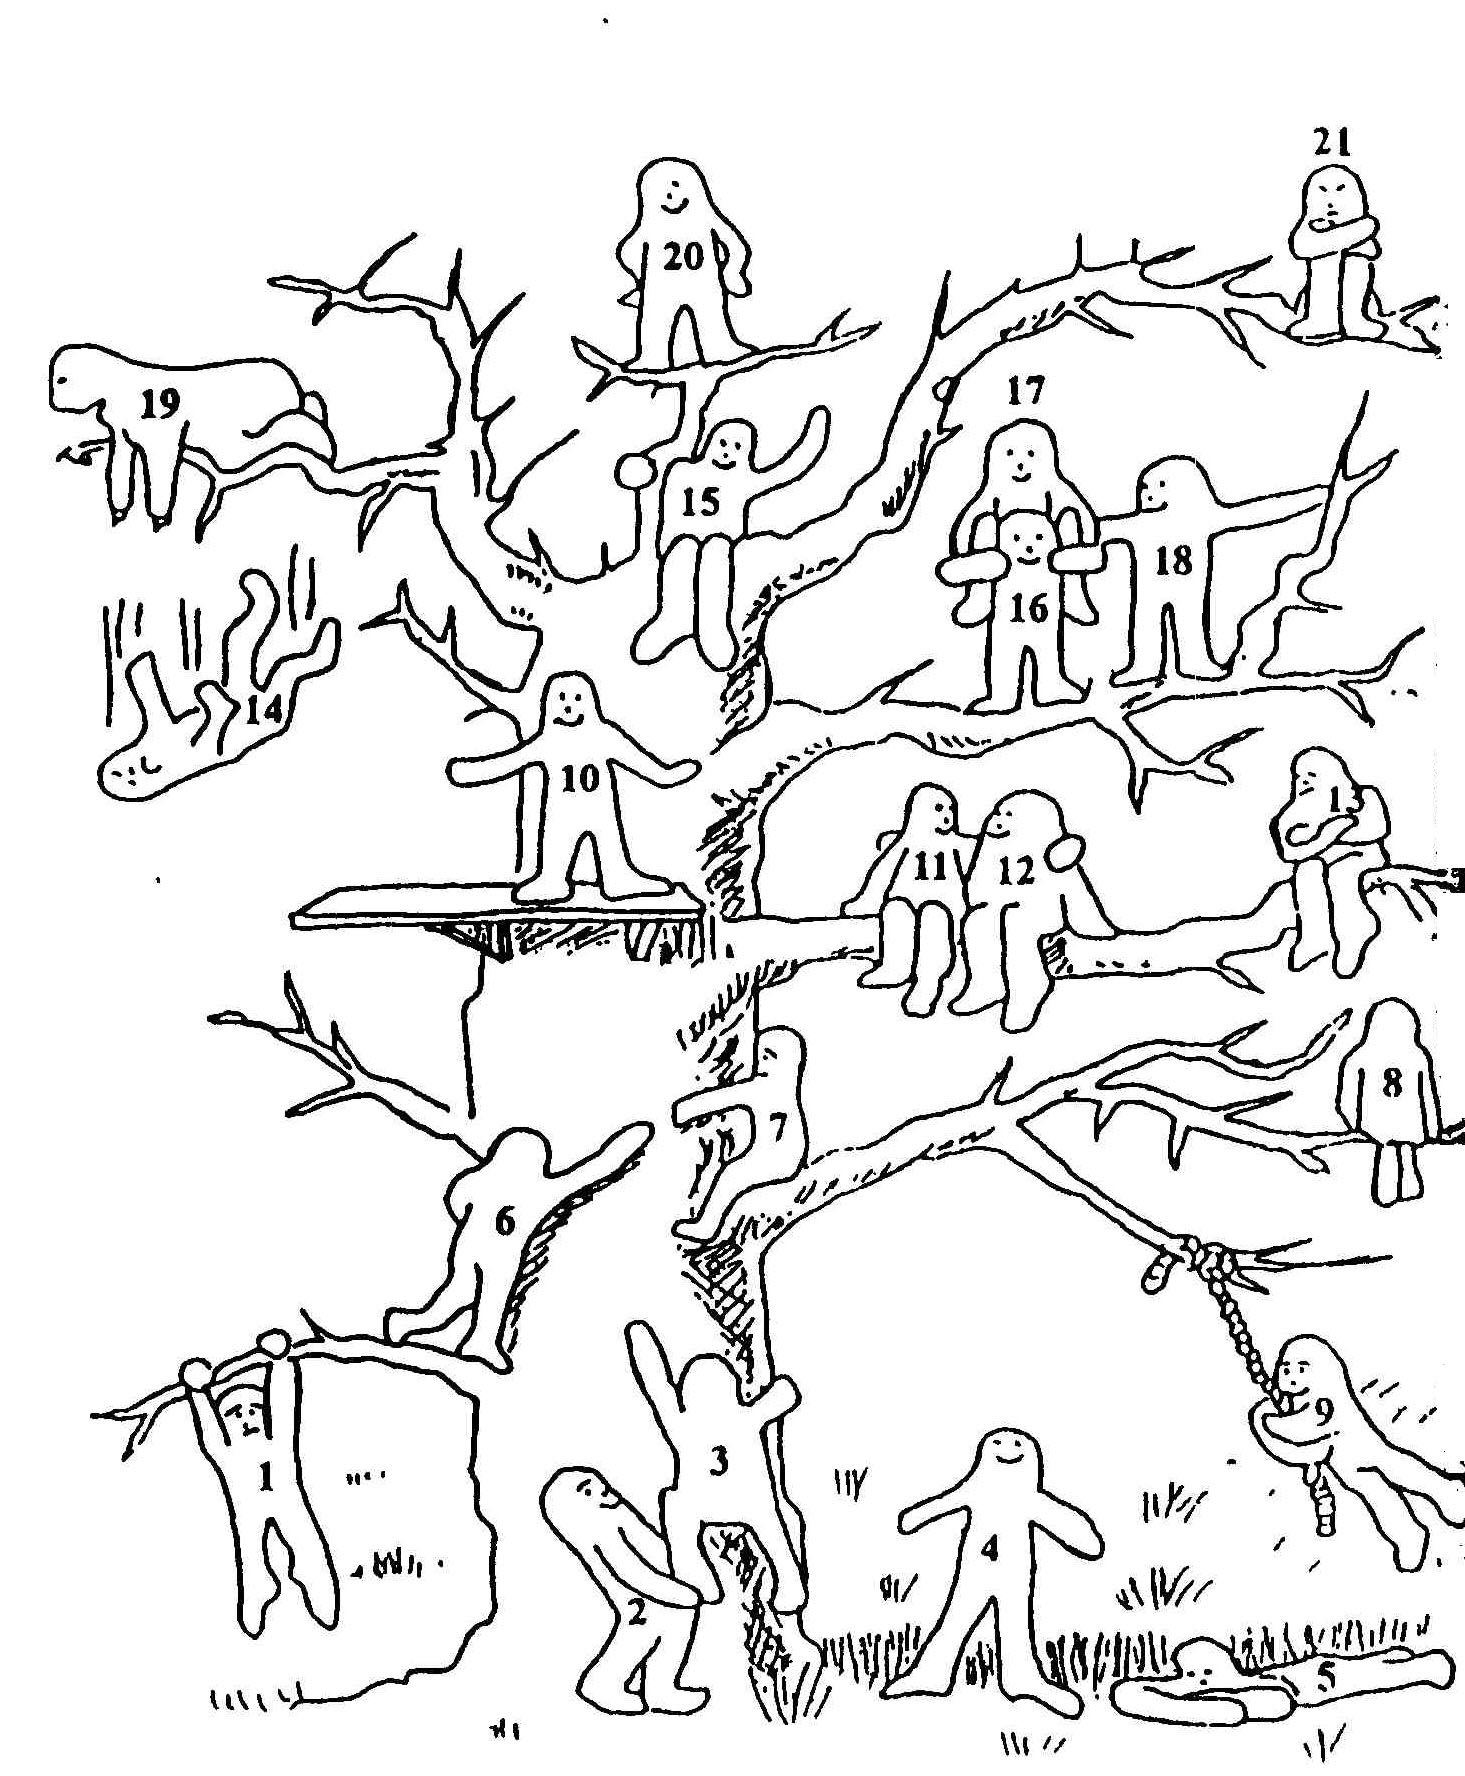 Проективная методика дерево Пономаренко. Пип Уилсон дерево с человечками. Проективная методика дерево Лампен. Методика дерево пип Уилсон. Методика самооценки школьника